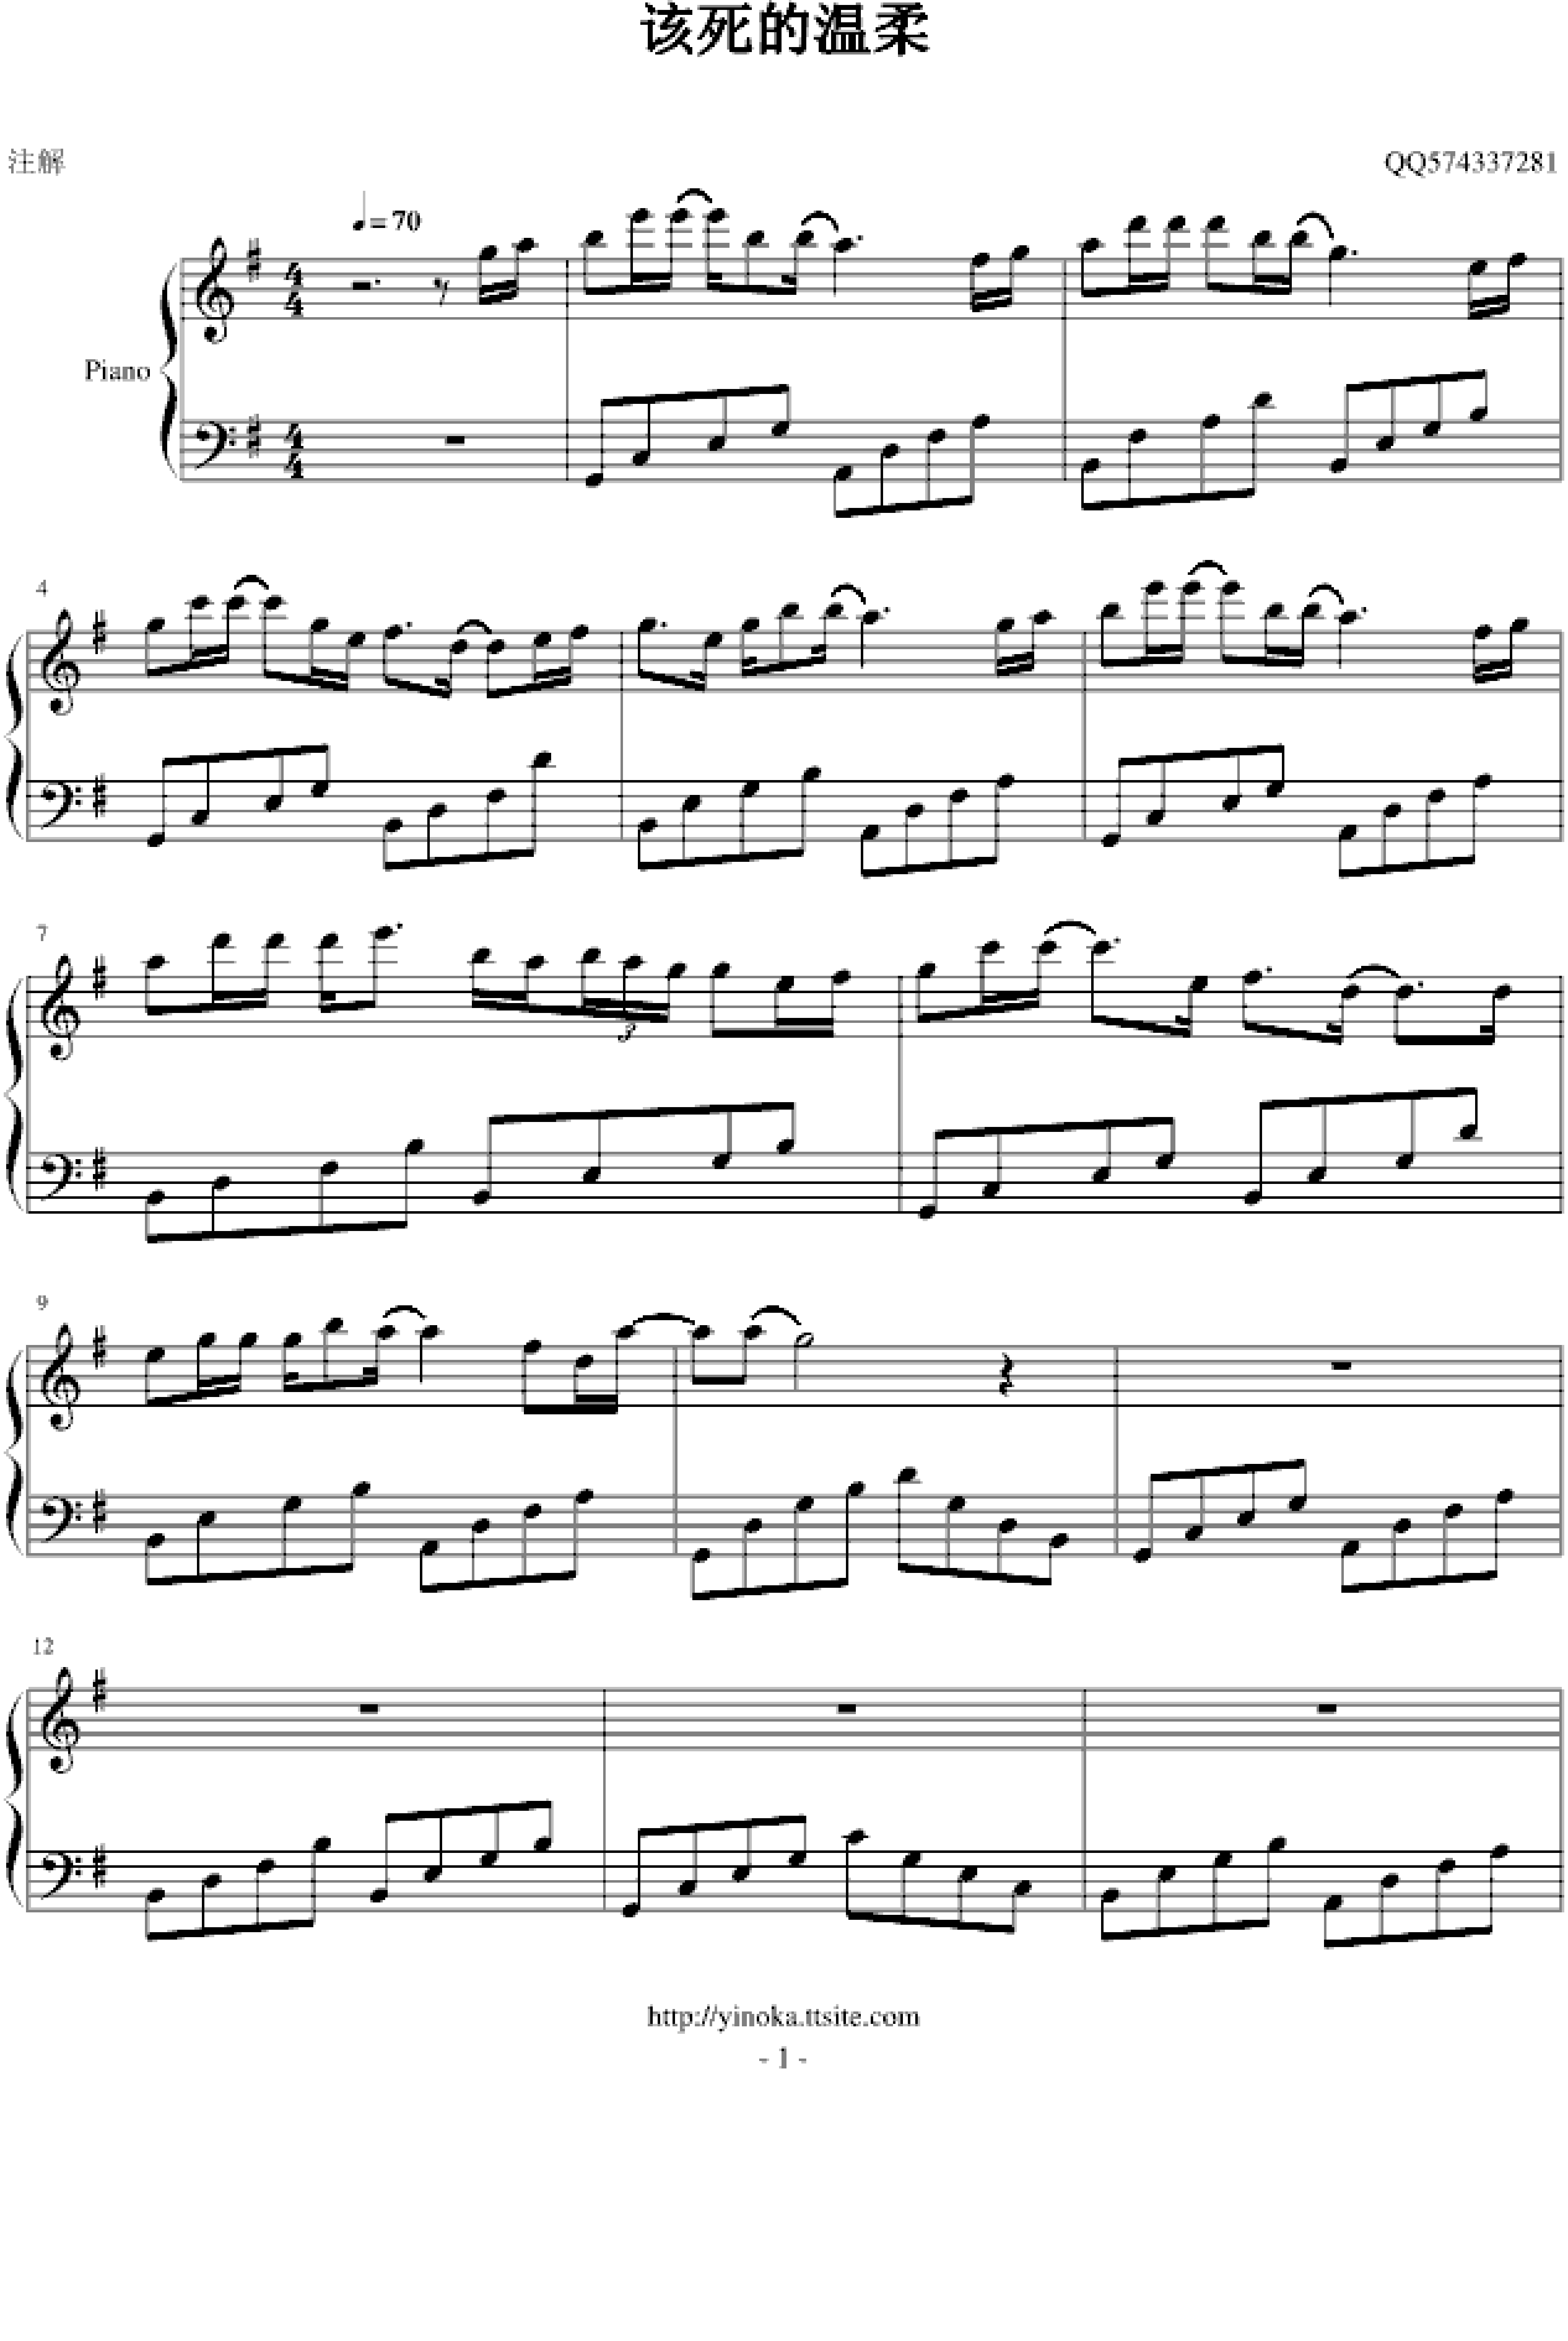 该死的温柔-马天宇五线谱预览3-钢琴谱文件（五线谱、双手简谱、数字谱、Midi、PDF）免费下载